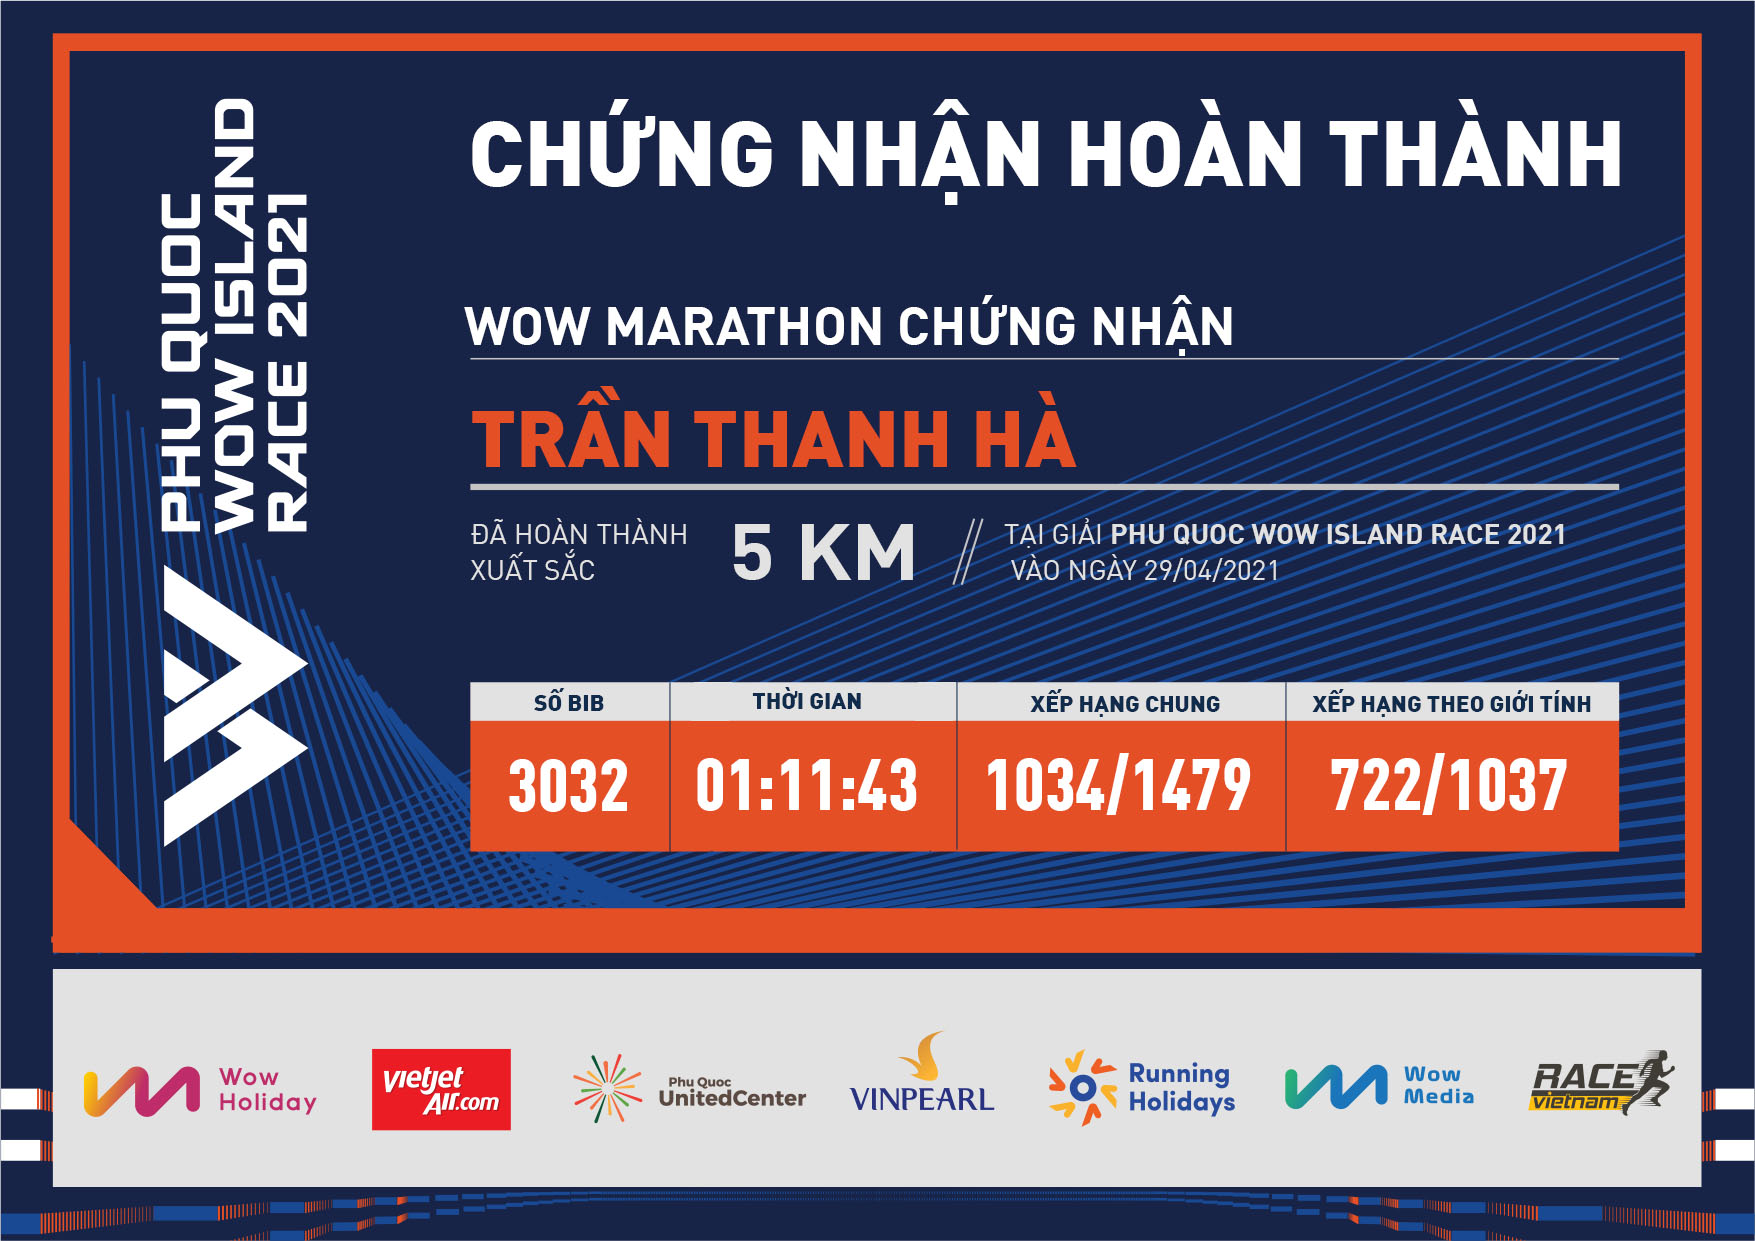 3032 - Trần Thanh Hà